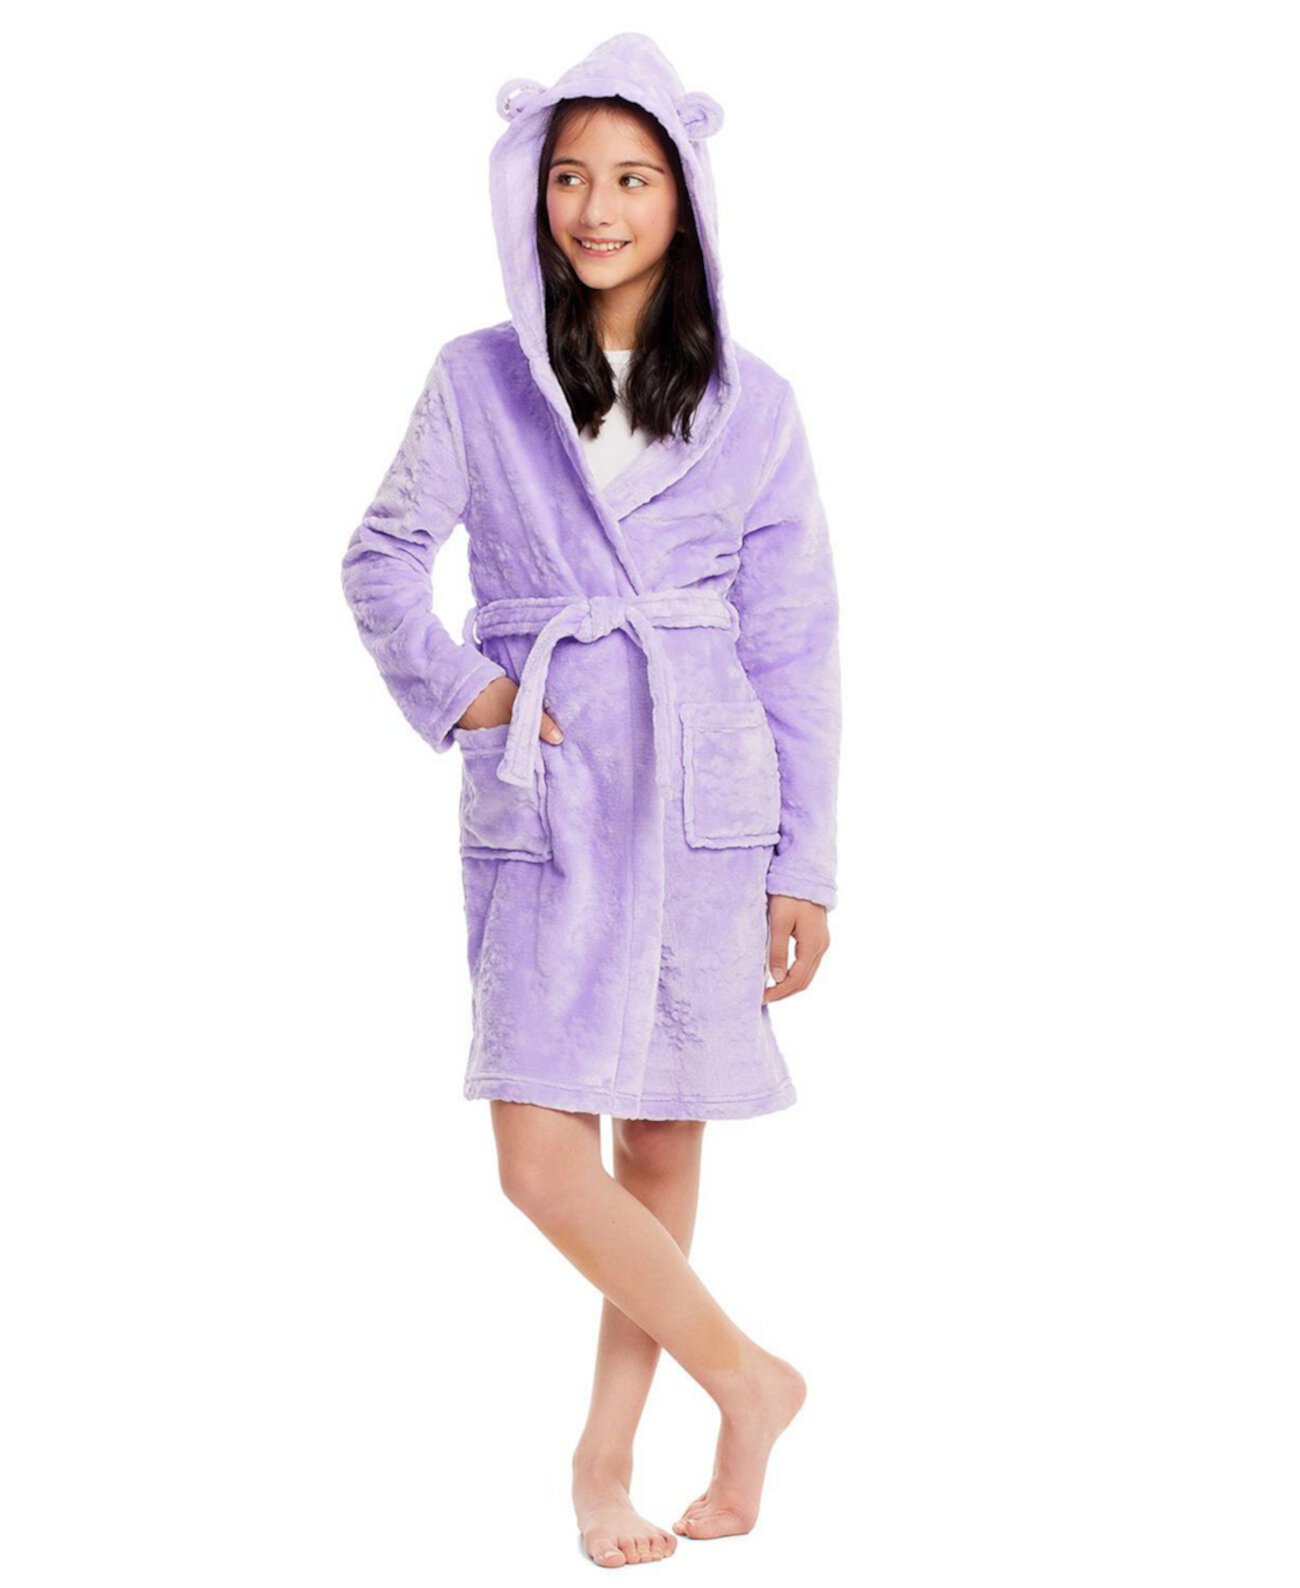 Малыш | Детский плюшевый банный халат для девочек с капюшоном, фланелевый флисовый халат для сна, детская одежда для сна Jellifish Kids